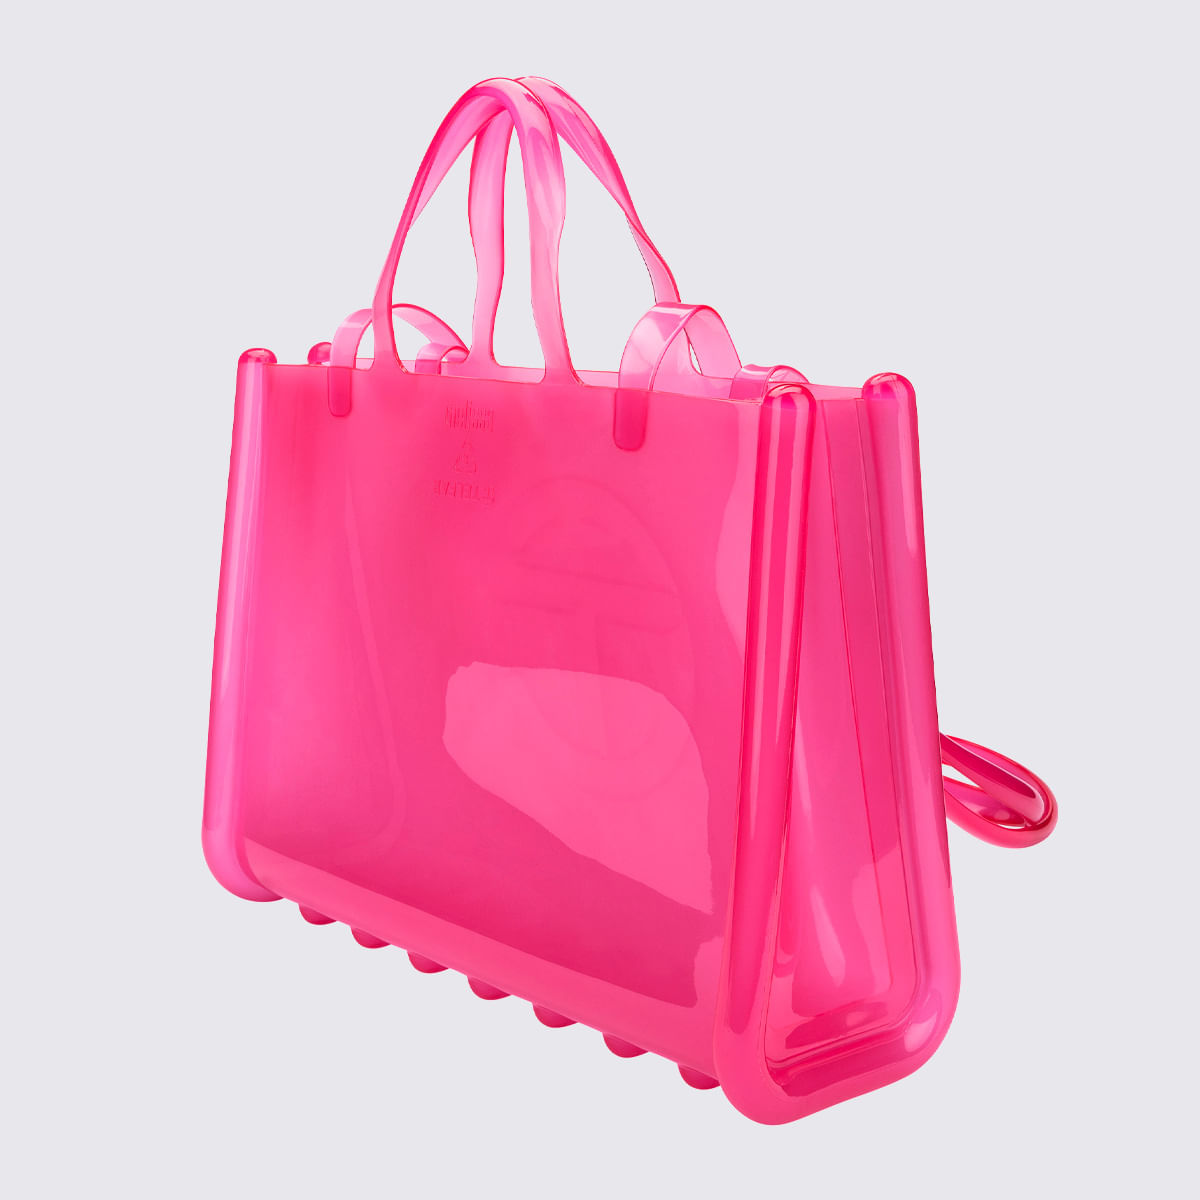 Melissa x Telfar Large Jelly Shopper - Clear Pink